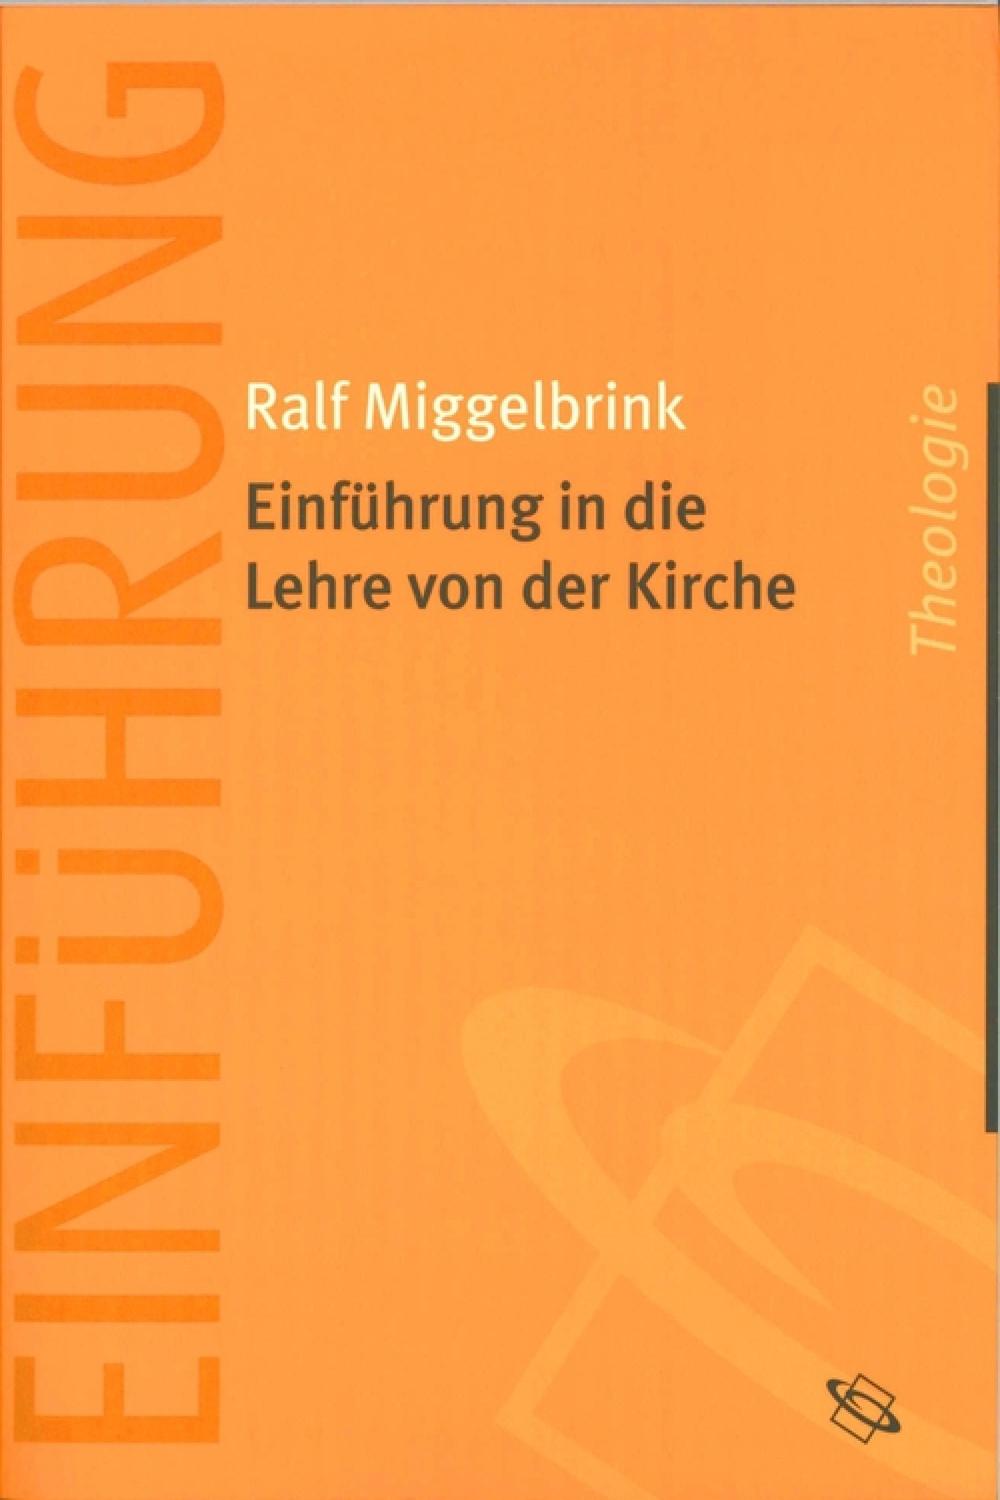 Einführung in die Lehre von der Kirche - Ralf Miggelbrink